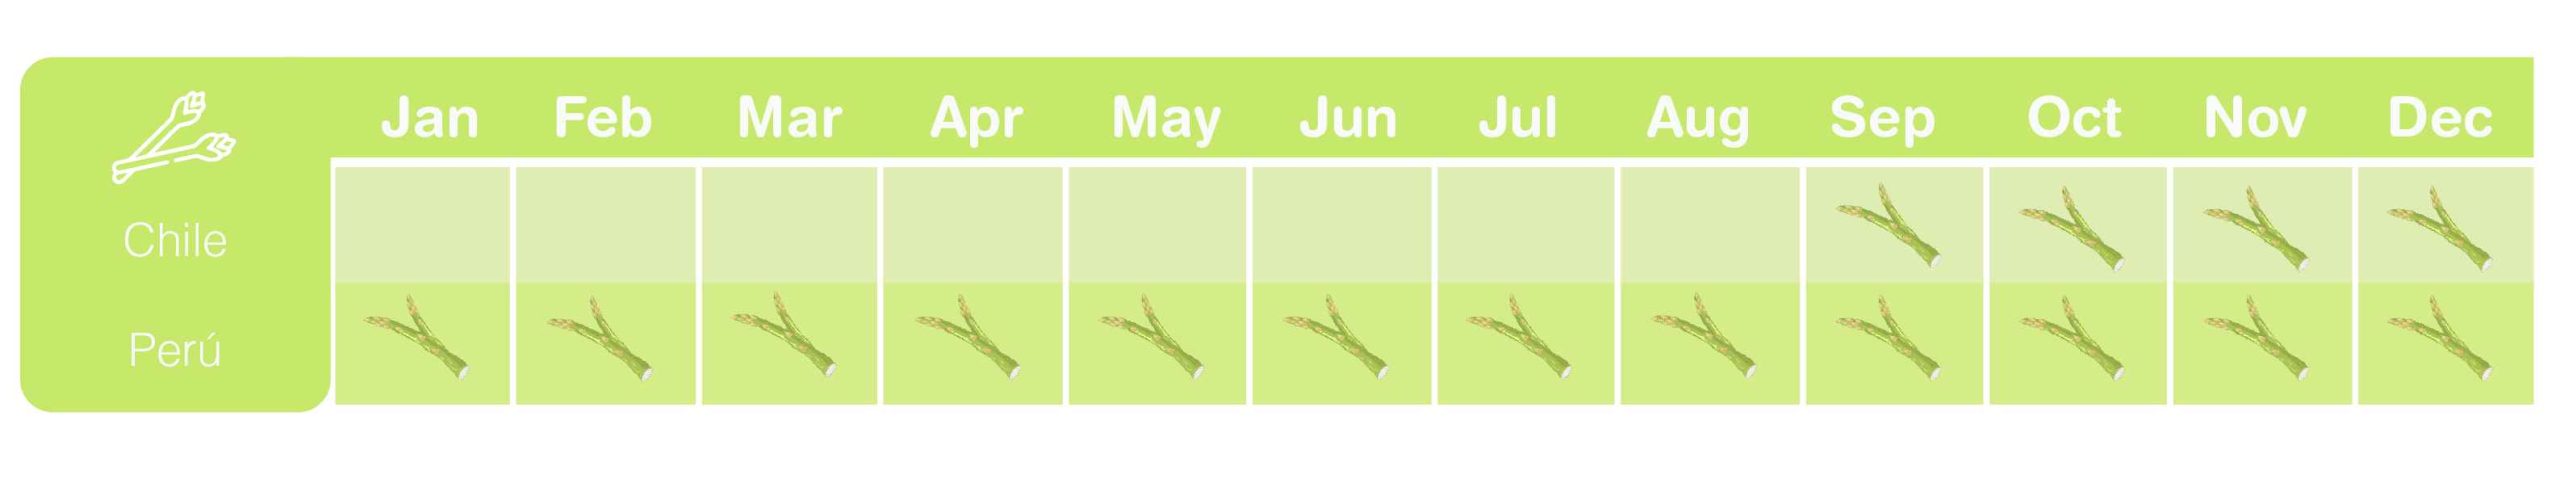 Asparagus season chart